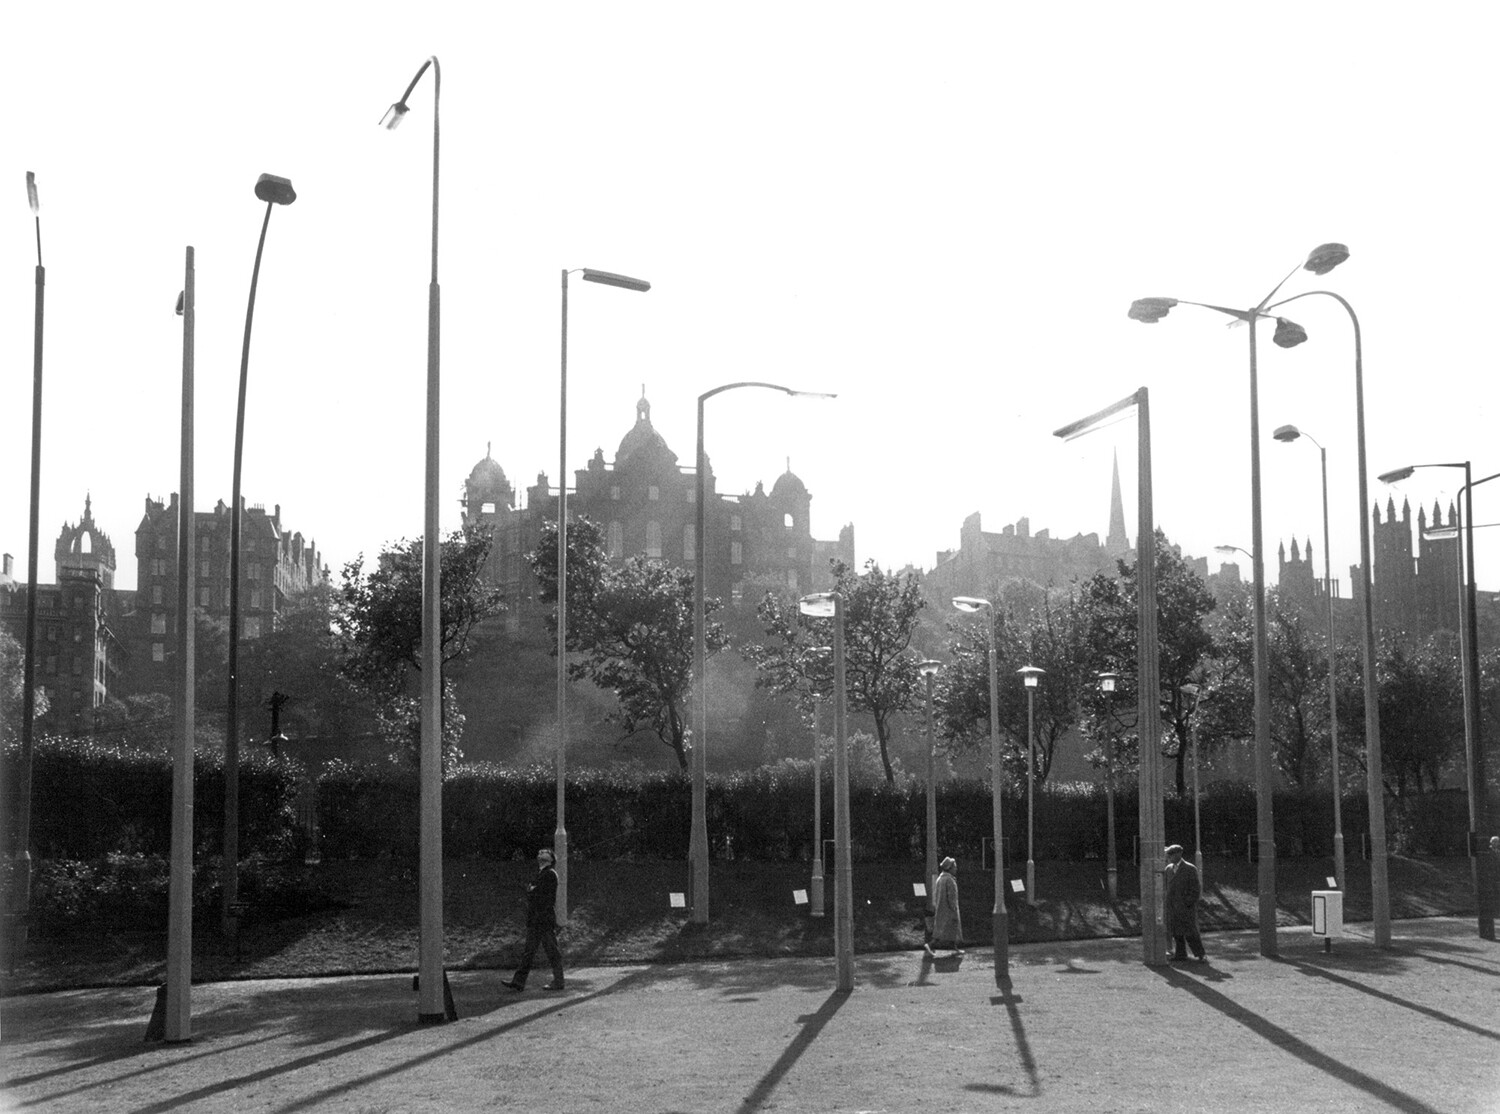 Выставка фонарных столбов, Эдинбург, 1964. Фотограф Роберт Бломфилд